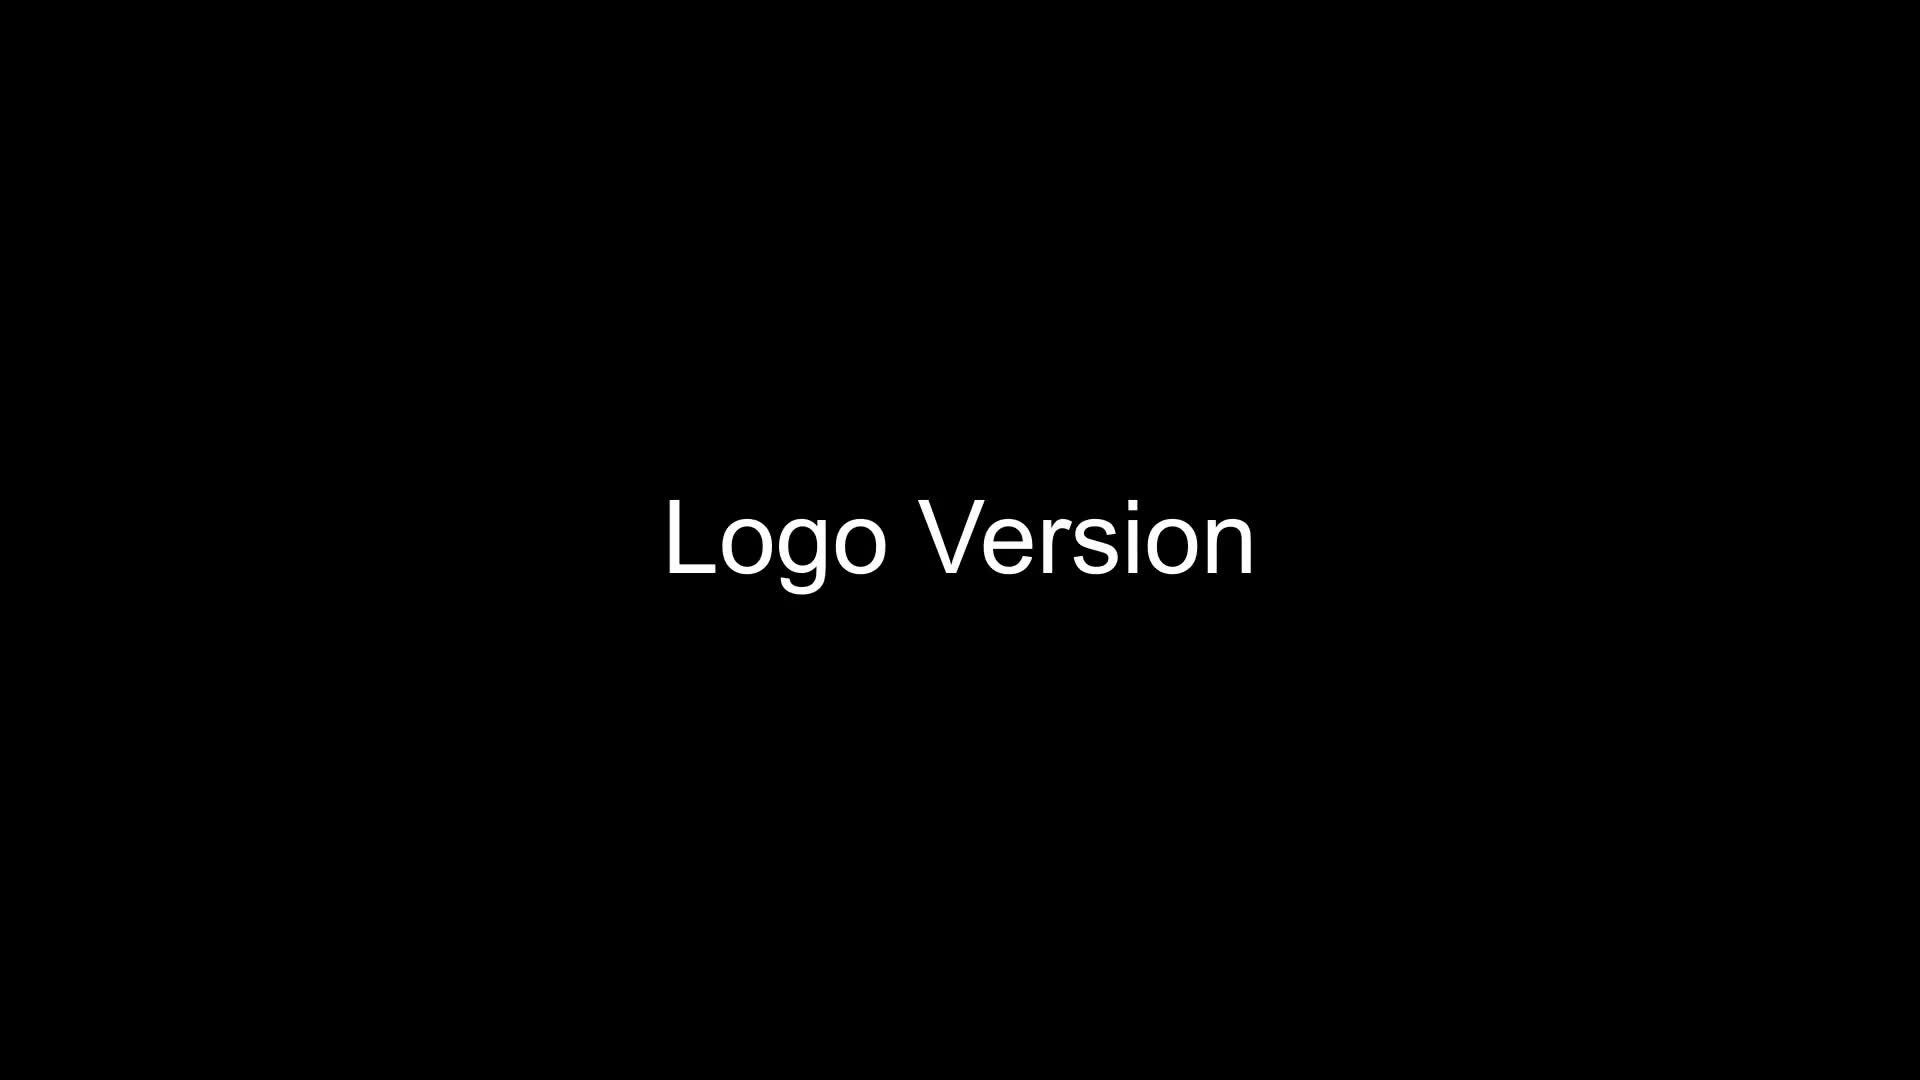 Stylish Corporate Logo Premiere Pro Videohive 25776664 Premiere Pro Image 1